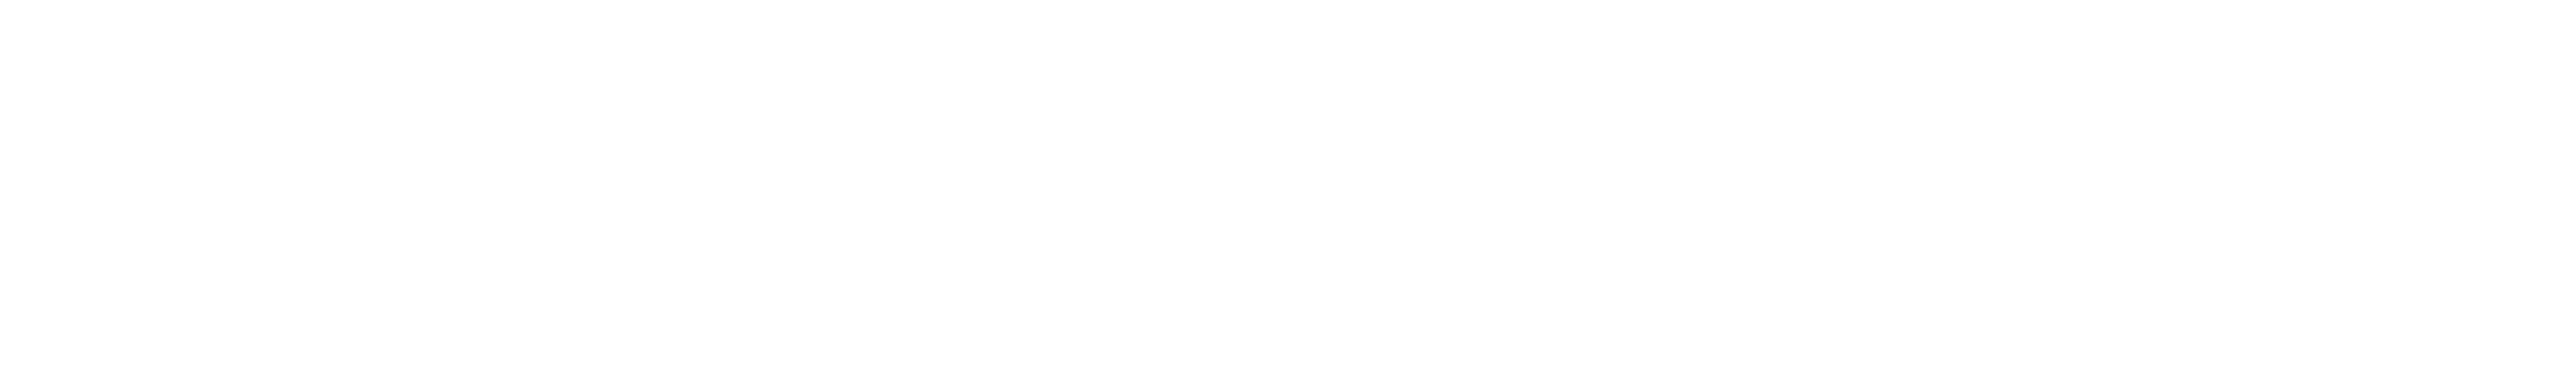 régua de logos, com a logo da acam portinari, museu índia vanuíre e governo do estado de são paulo